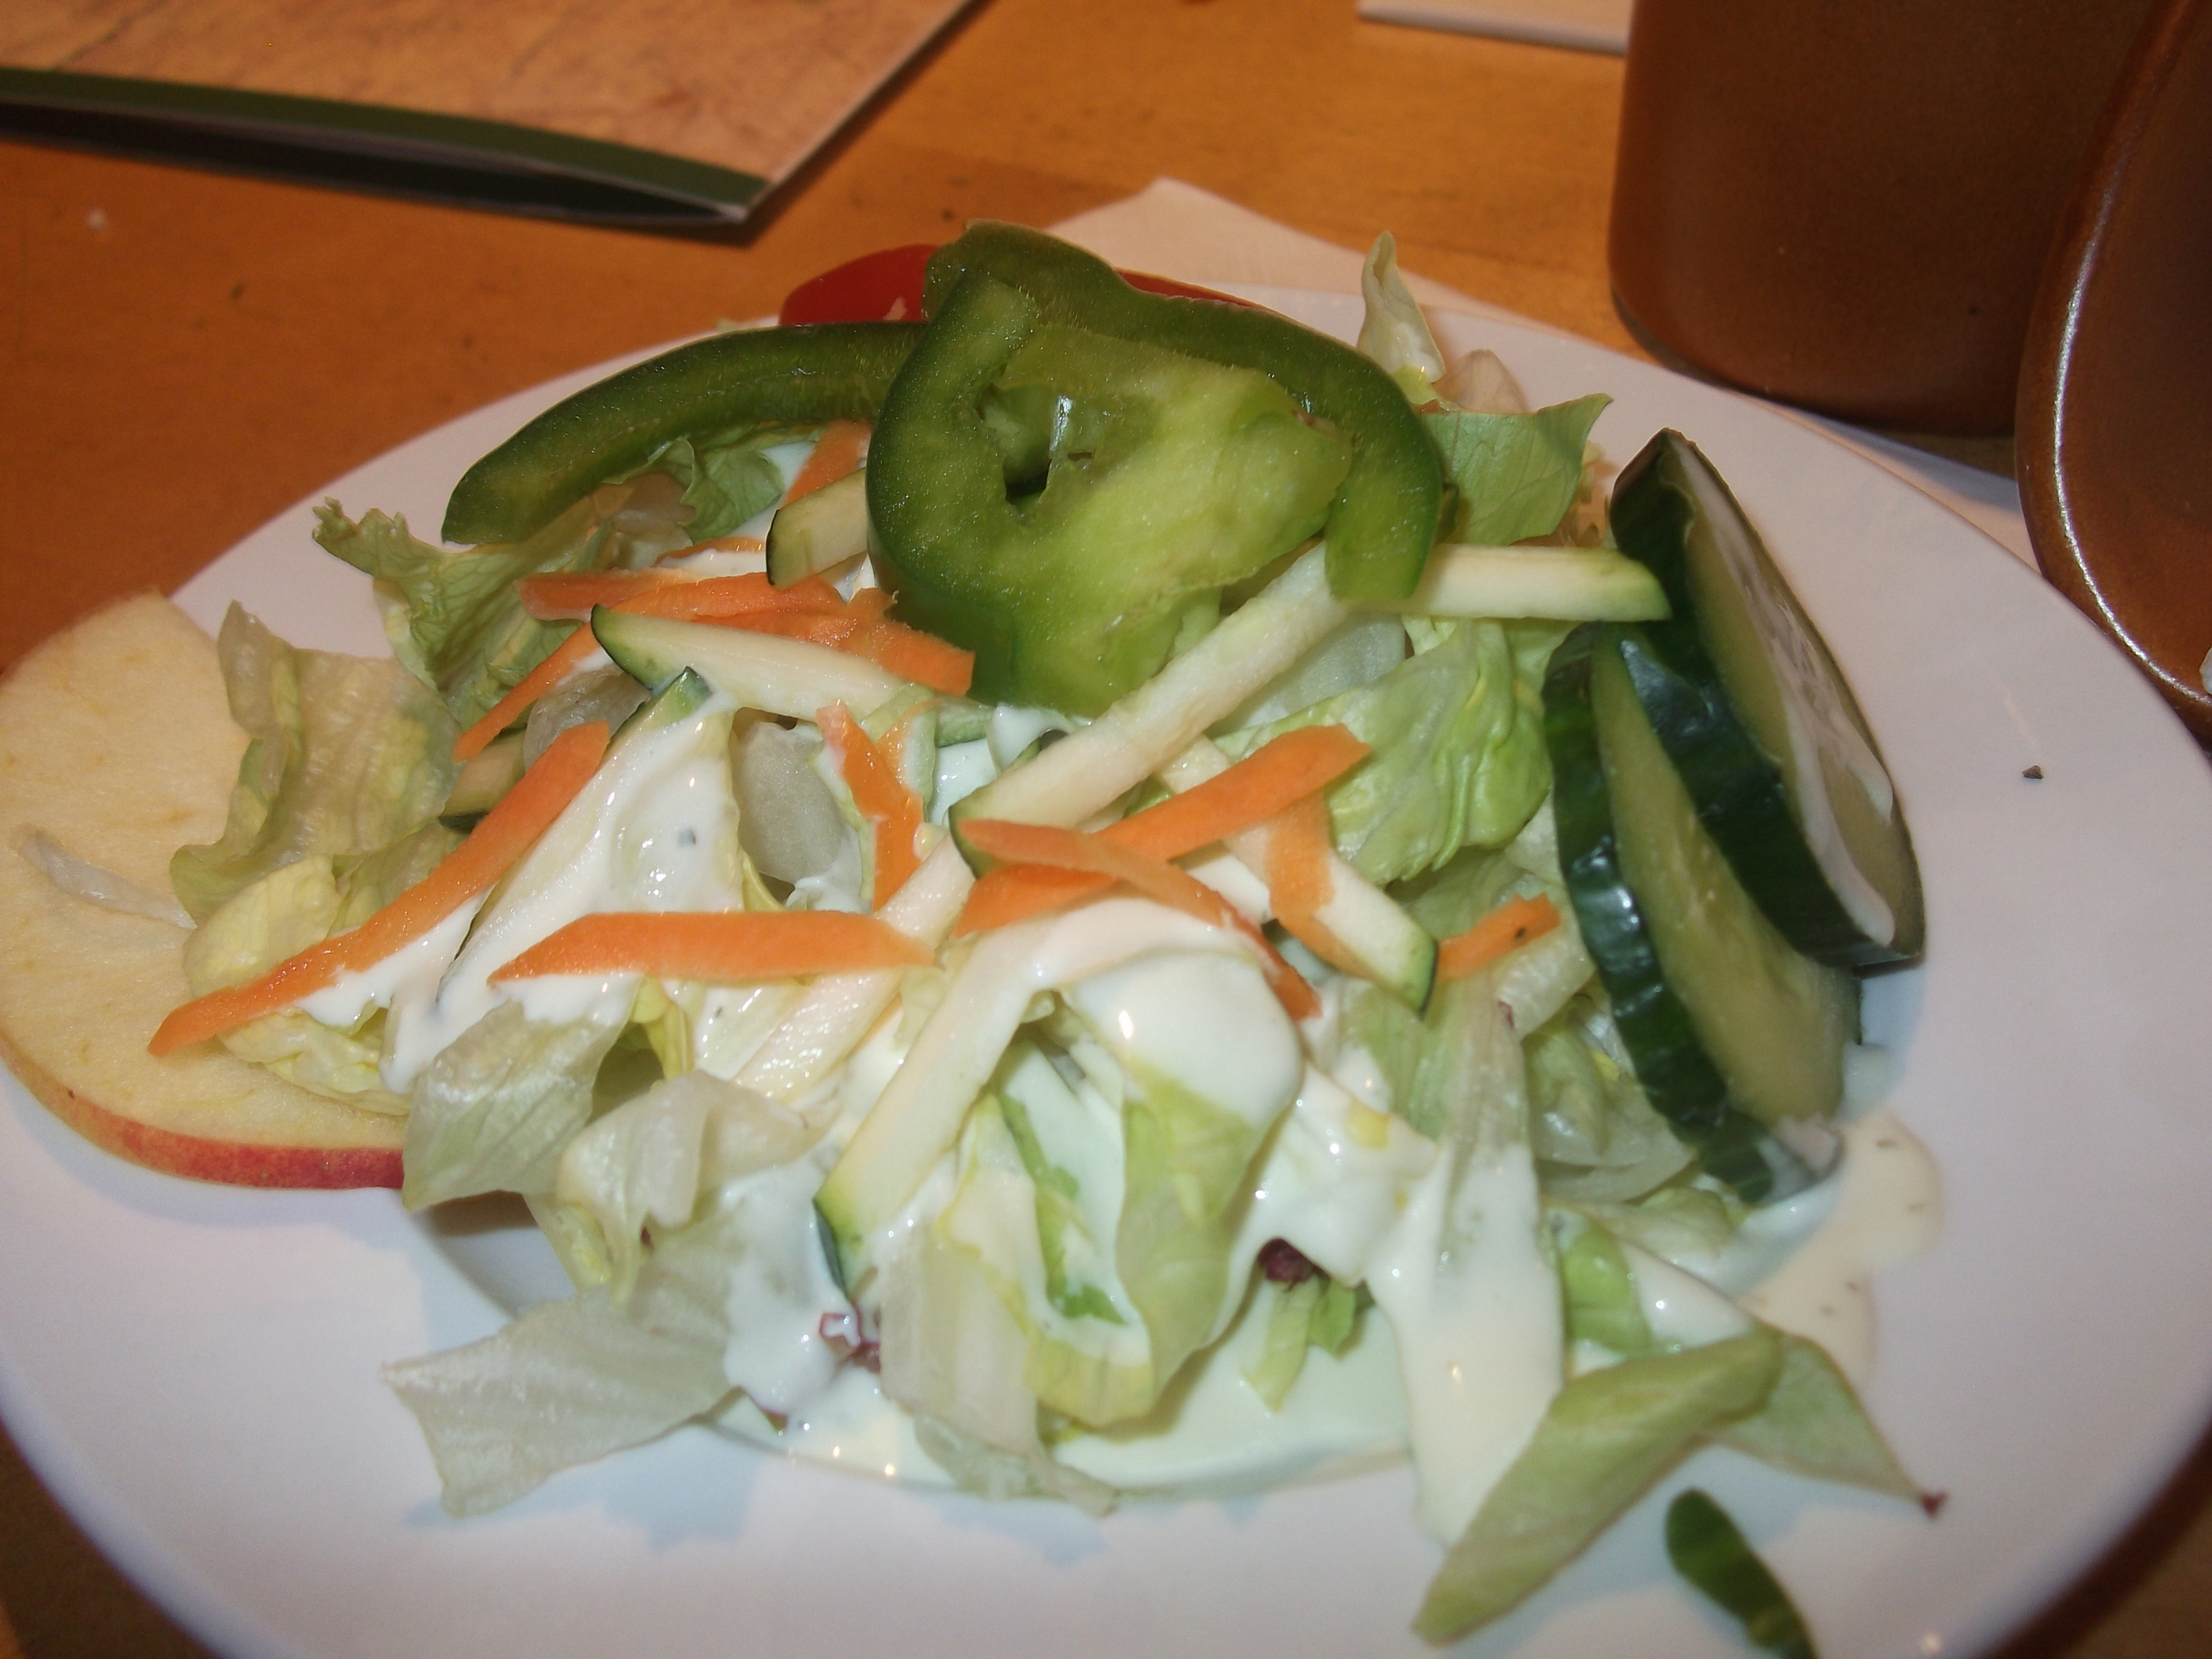 Salatbeilage zum Braumeister Krüstchen